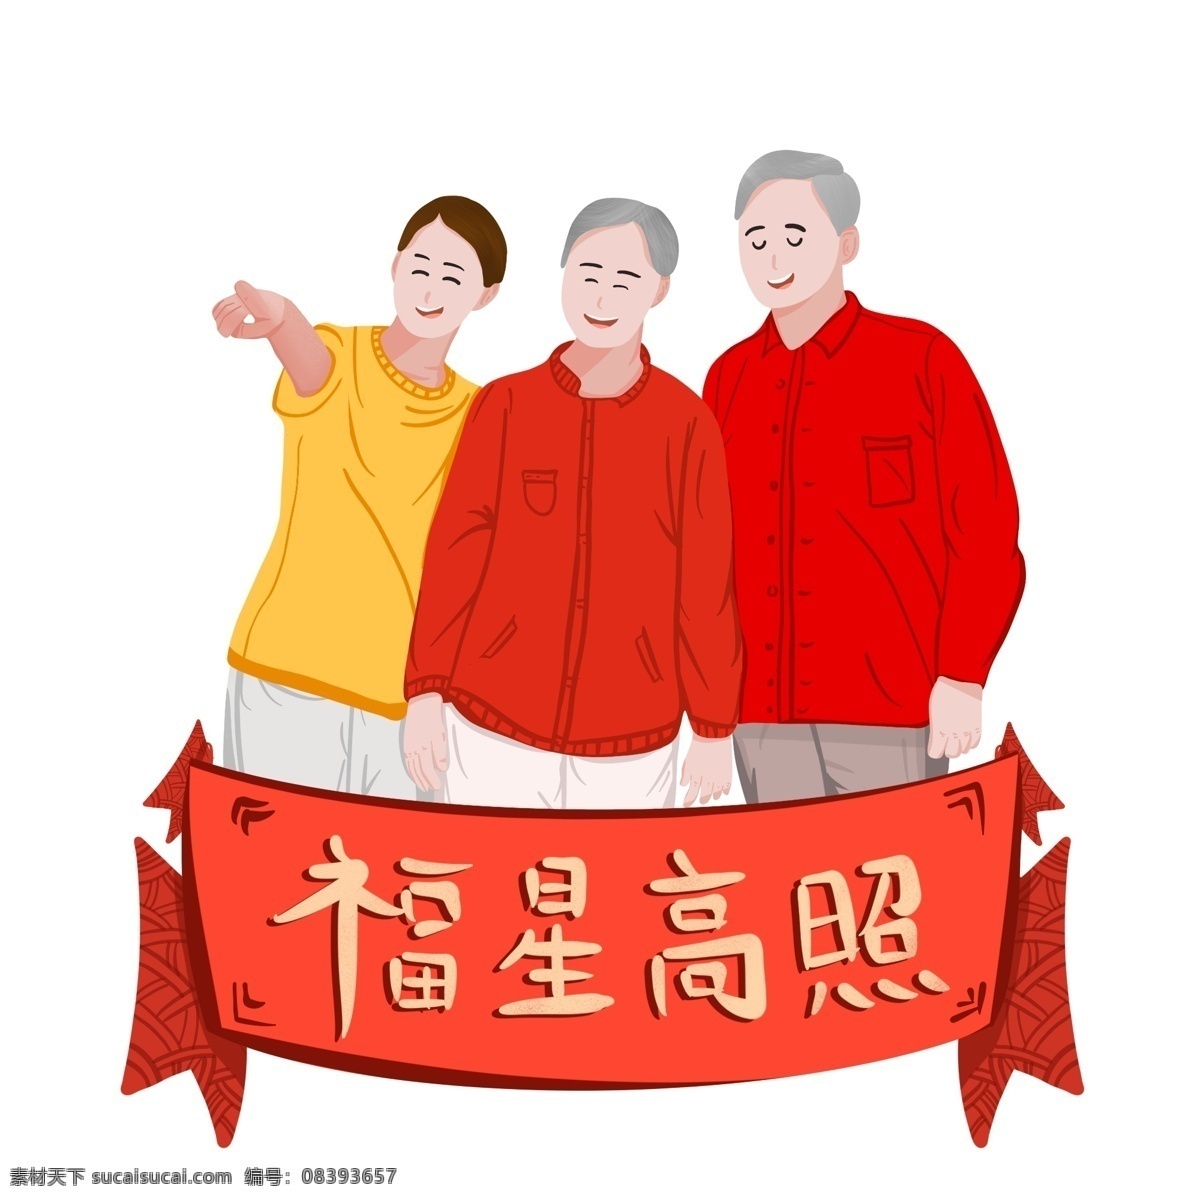 2019 新年 春节 猪年 一家人 手绘 温馨 团聚